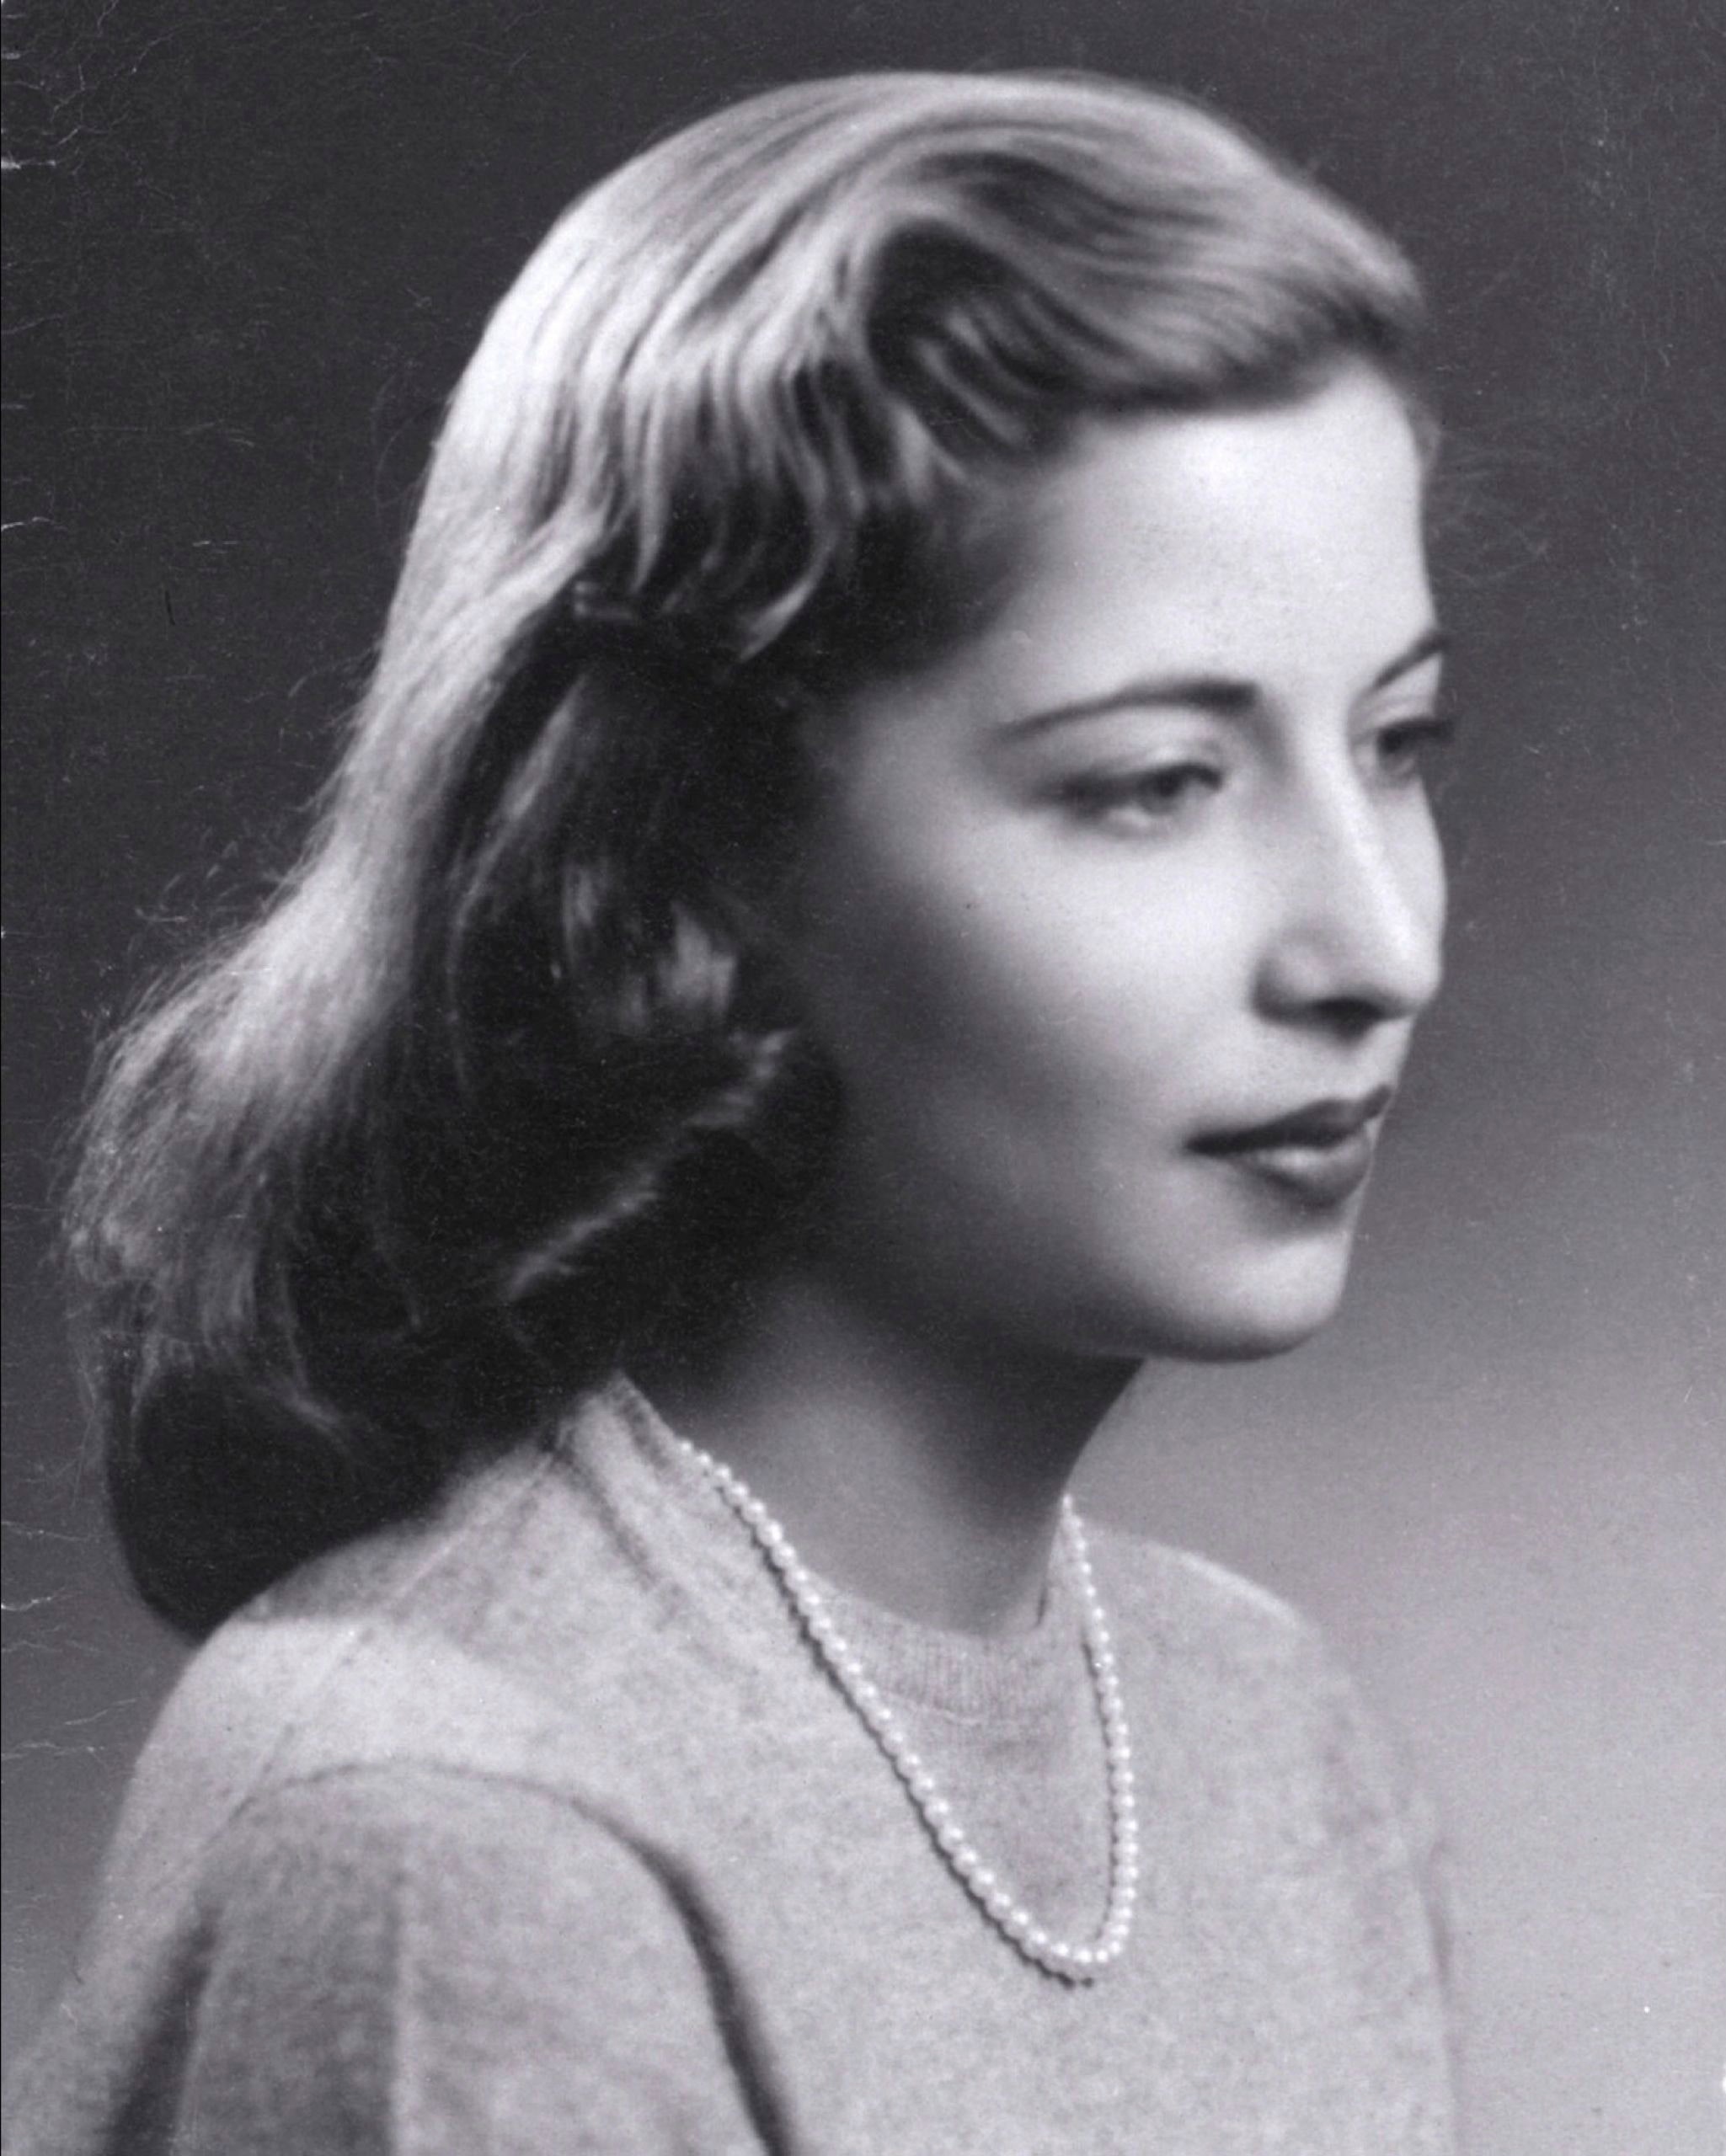 Ruth Bader Ginsburg, circa 1952.